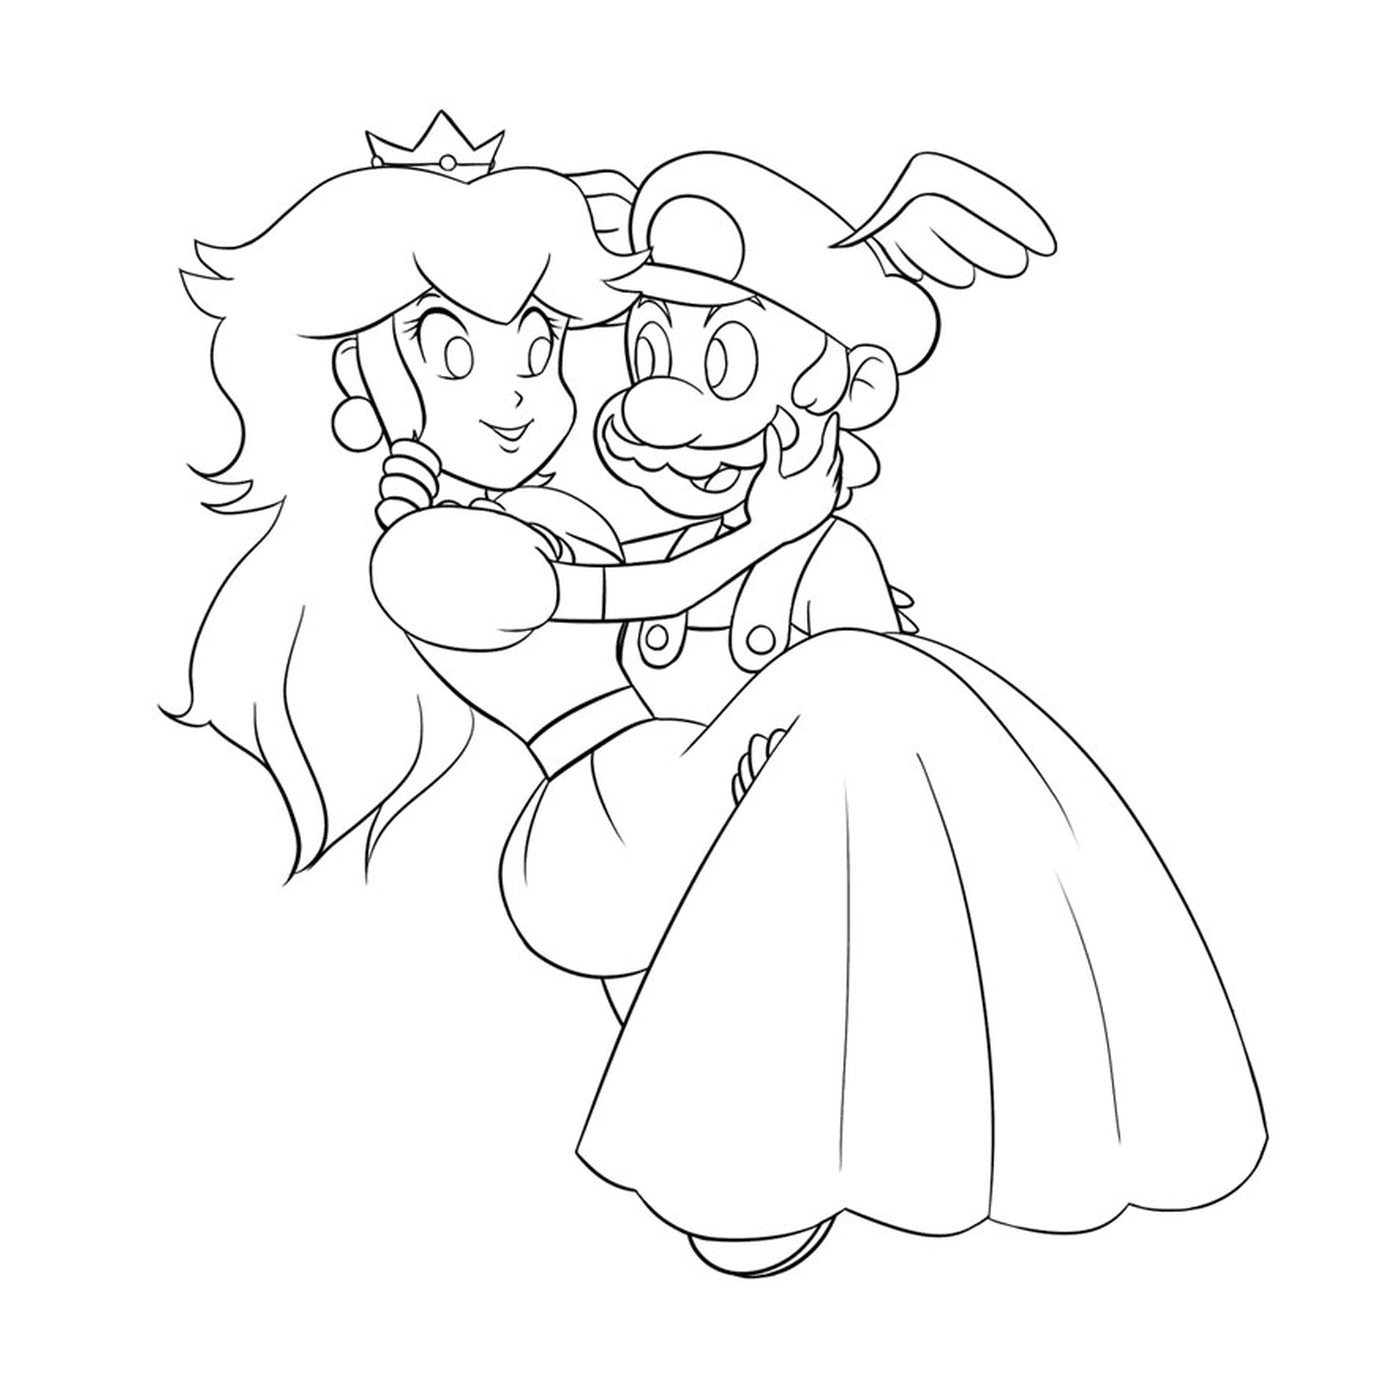  Mario y la princesa 